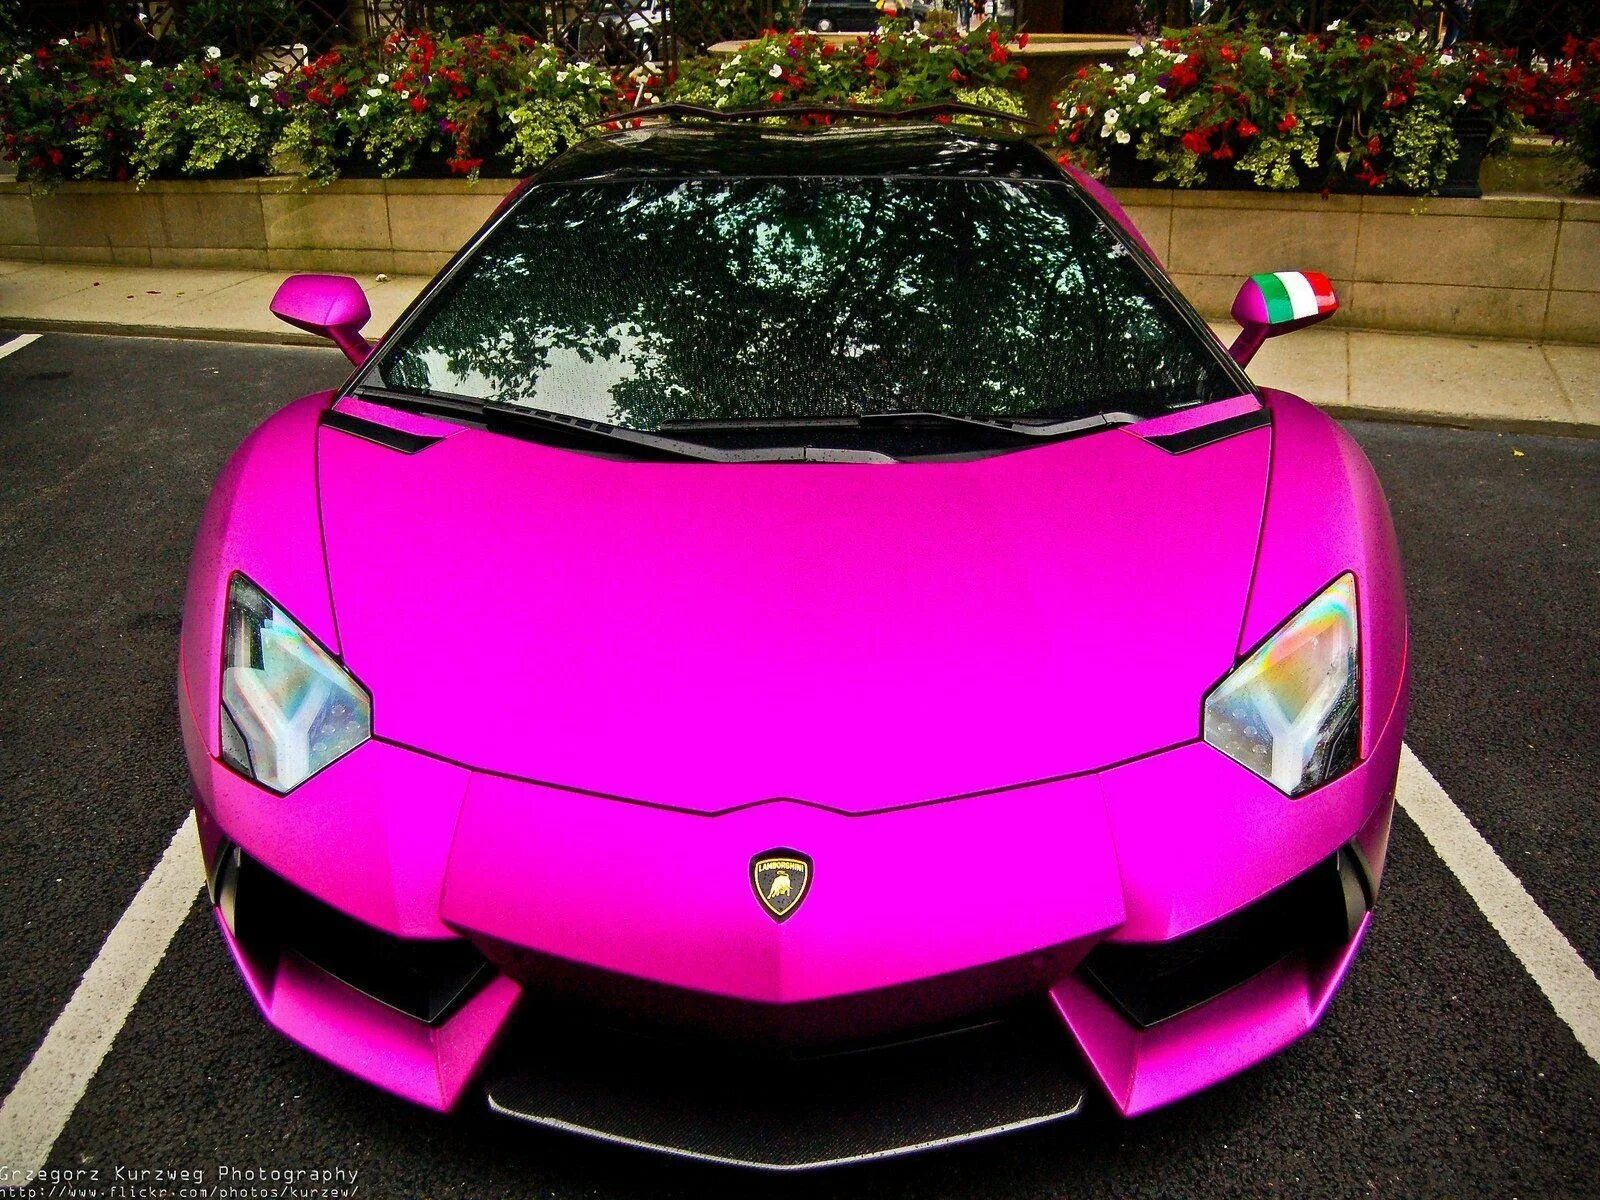 Lamborghini Aventador lp700-4 розовая. Пурпл Ламборджини. Lamborghini Aventador lp700-4 фиолетовый. Lamborghini Aventador lp700 розовый. Где розовые машины